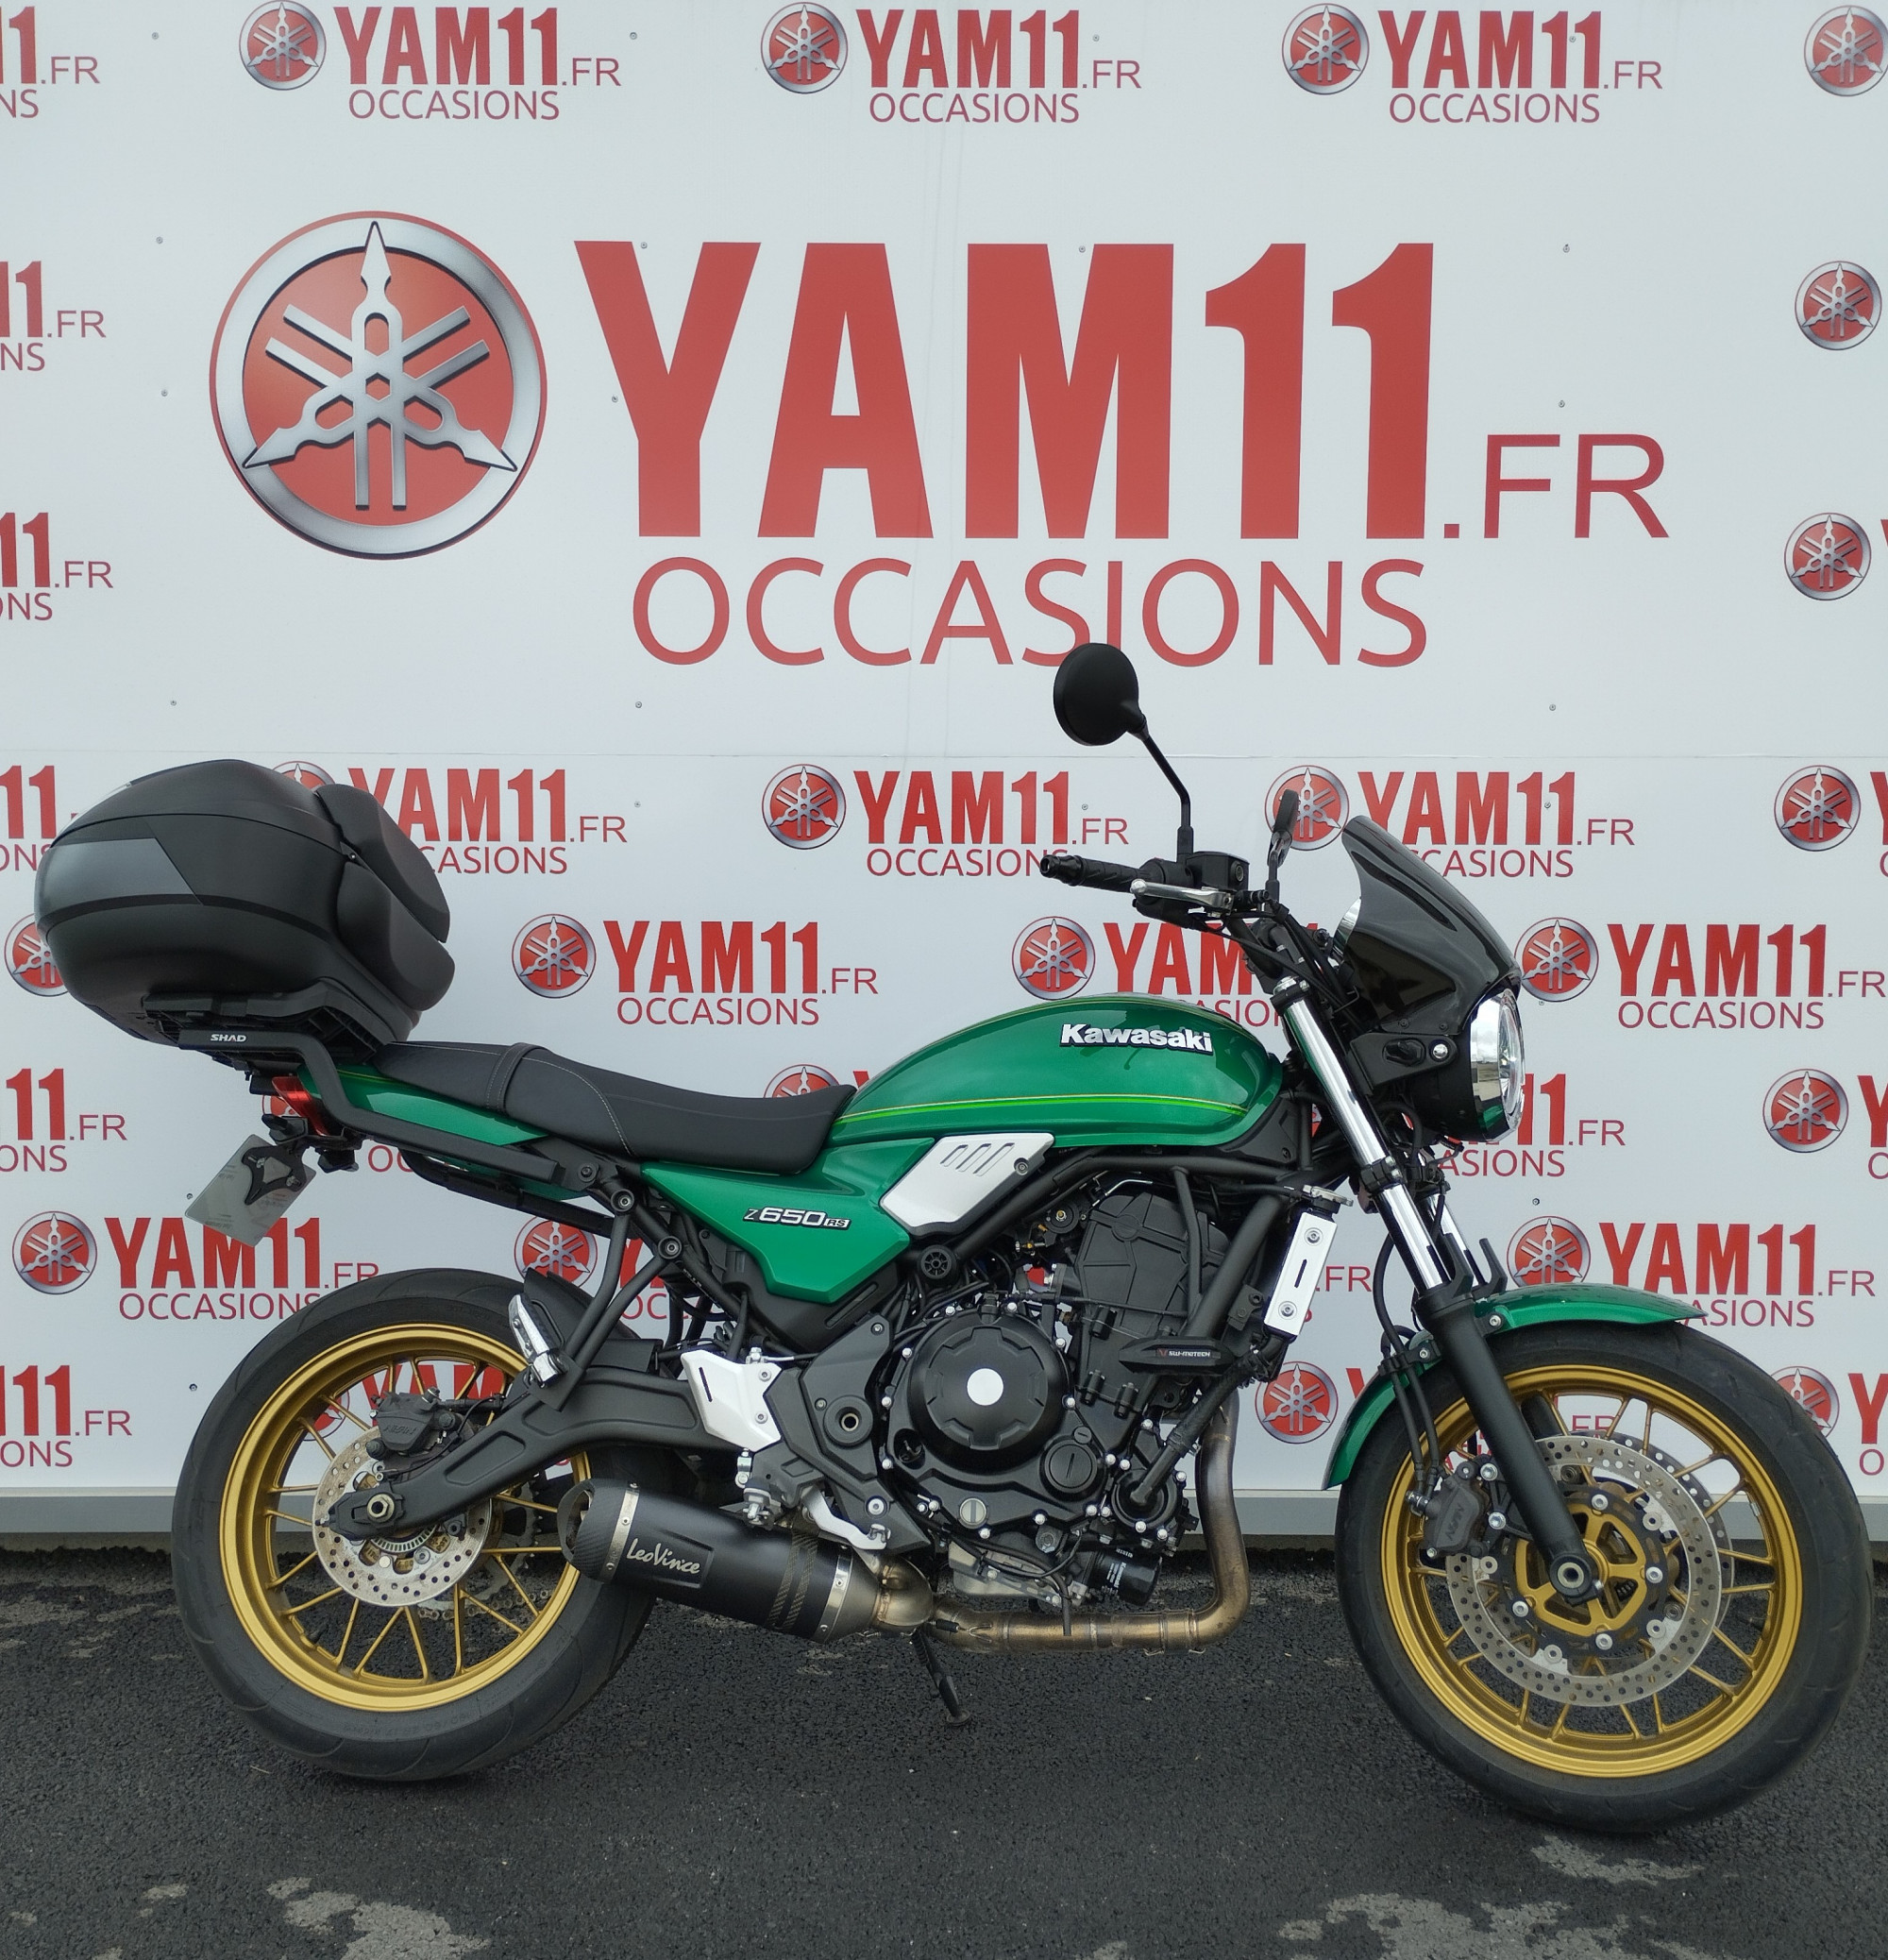 Annonce moto Kawasaki A1